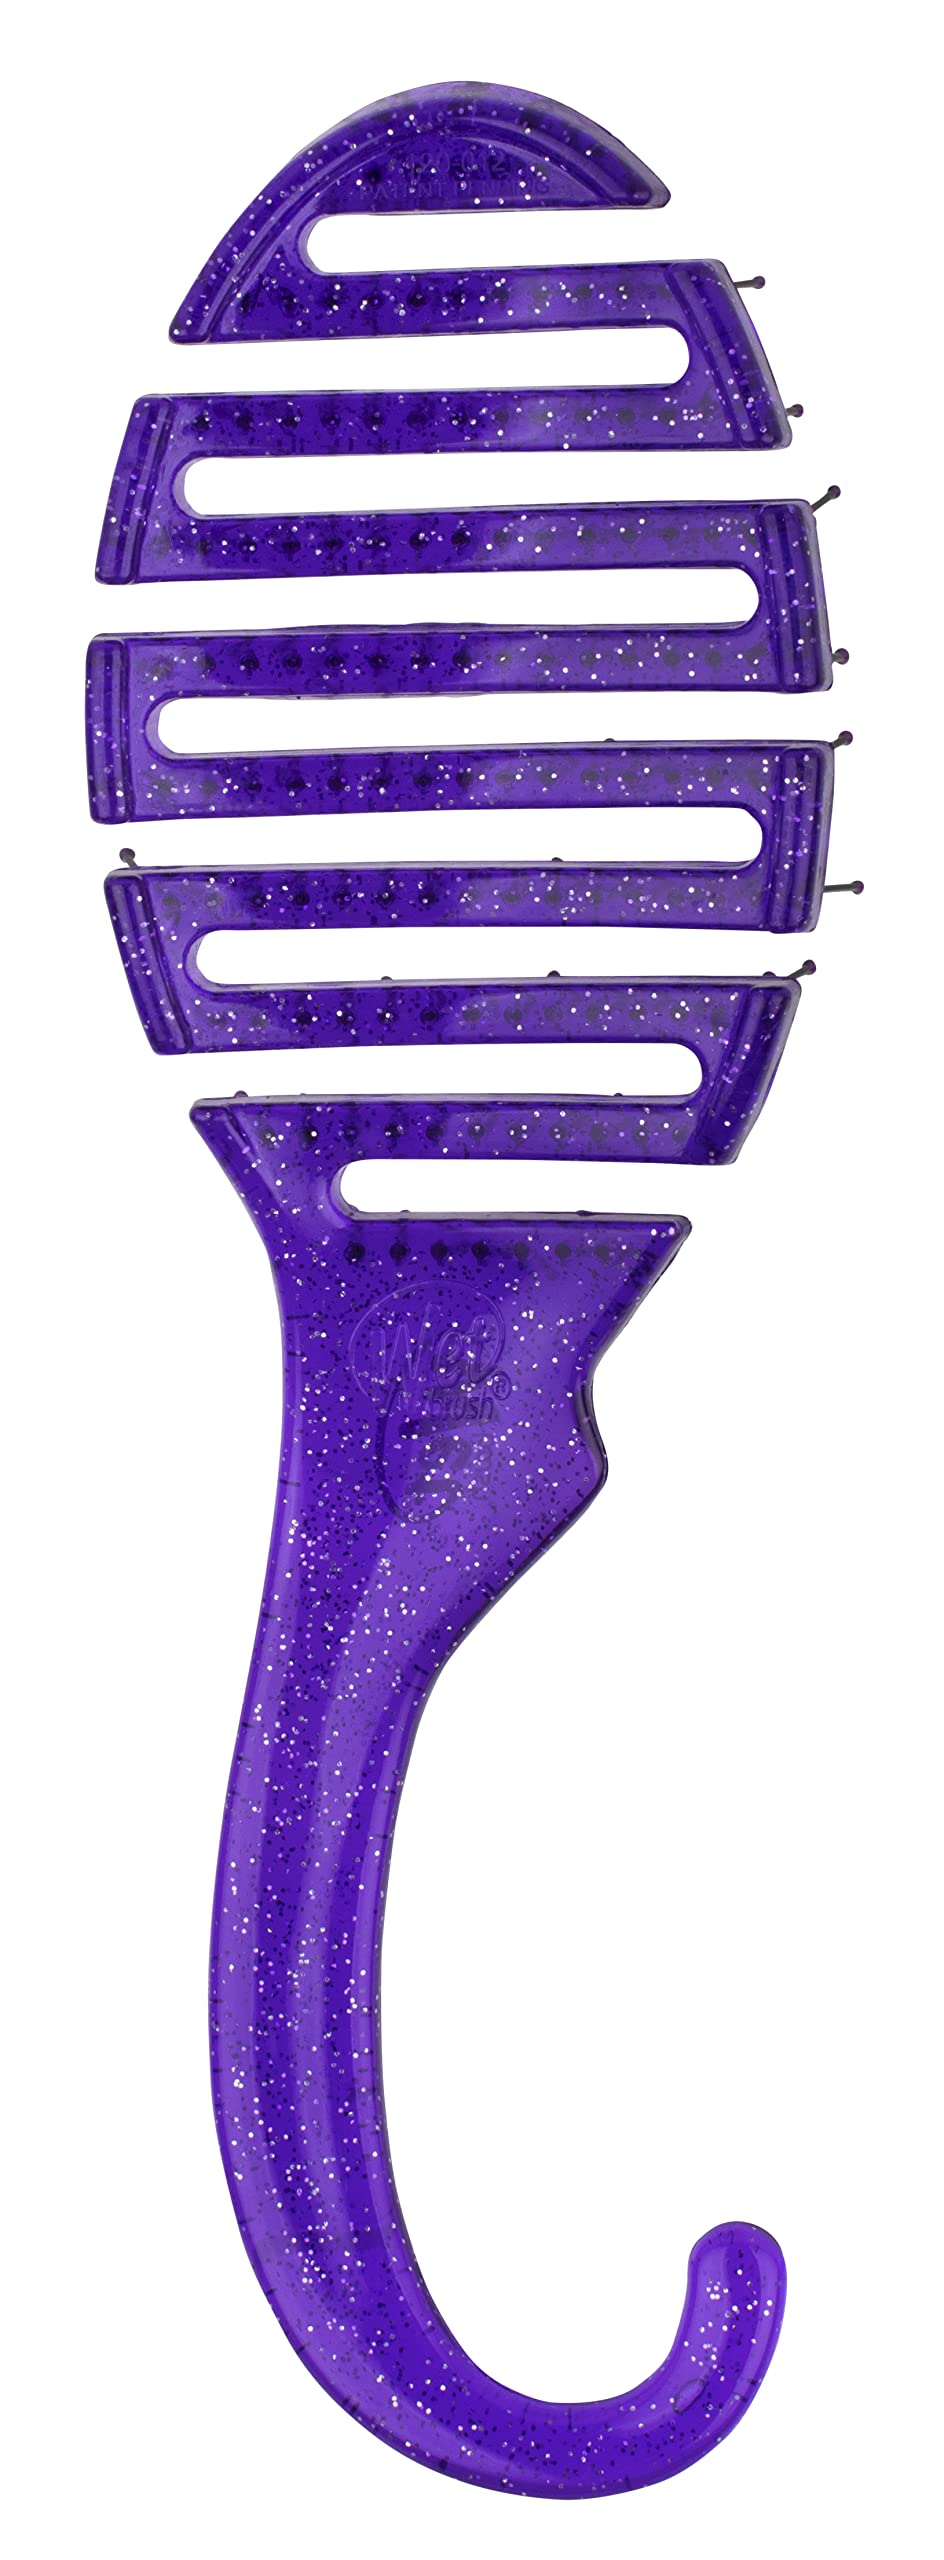 Wet Brush Shower Detangler Hair Brush - Purple Glitter - Ultra-Soft IntelliFlex Bristles with Hangable Design - Detangling Comb Protects Against Split Ends & Breakage - Pain-Free for Wet & Dry Hair